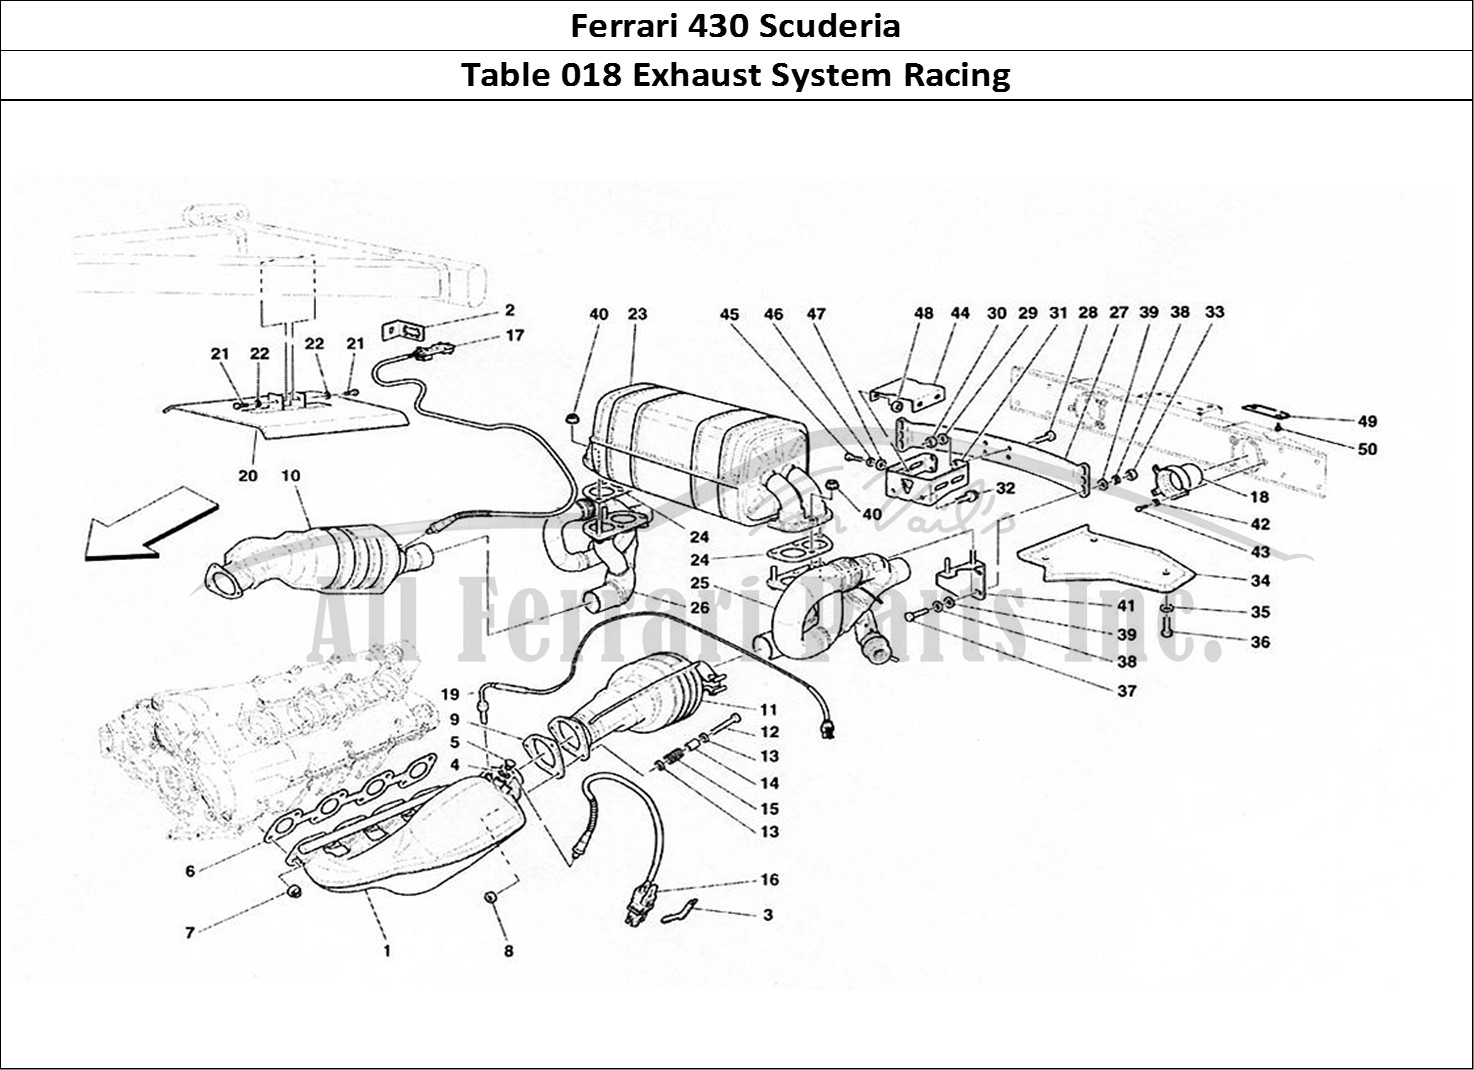 Ferrari Parts Ferrari 430 Scuderia Page 018 Exhaust System - Racing